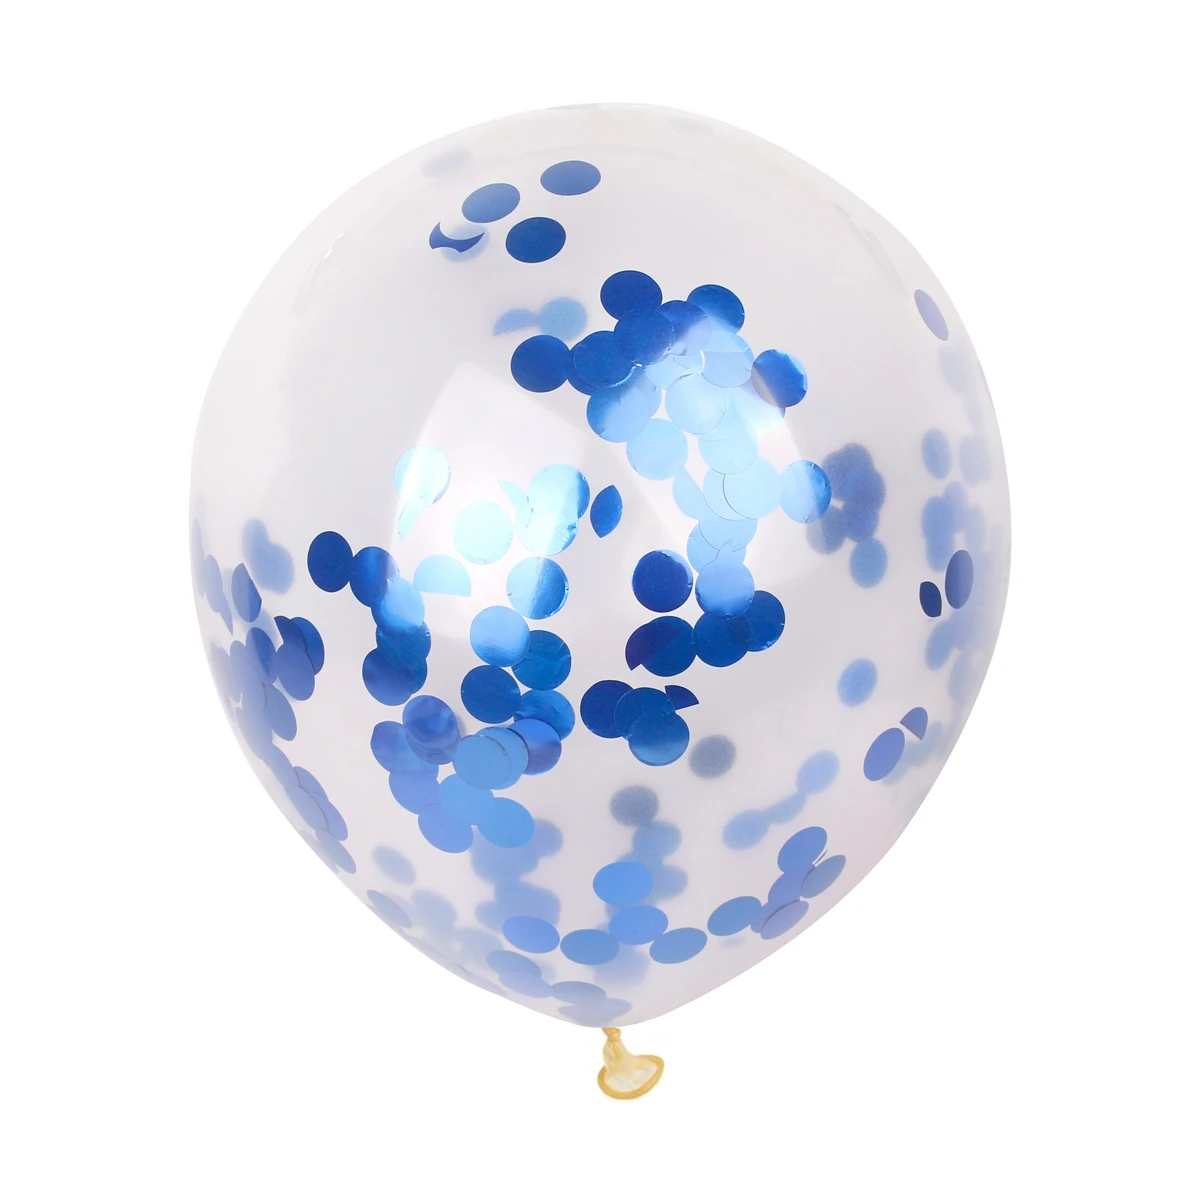 HUIRAN 12 дюймов золотой прозрачный воздушный шар "Конфетти" лента для воздушных шаров Baloons Balons Свадьба С Днем Рождения Декор шары